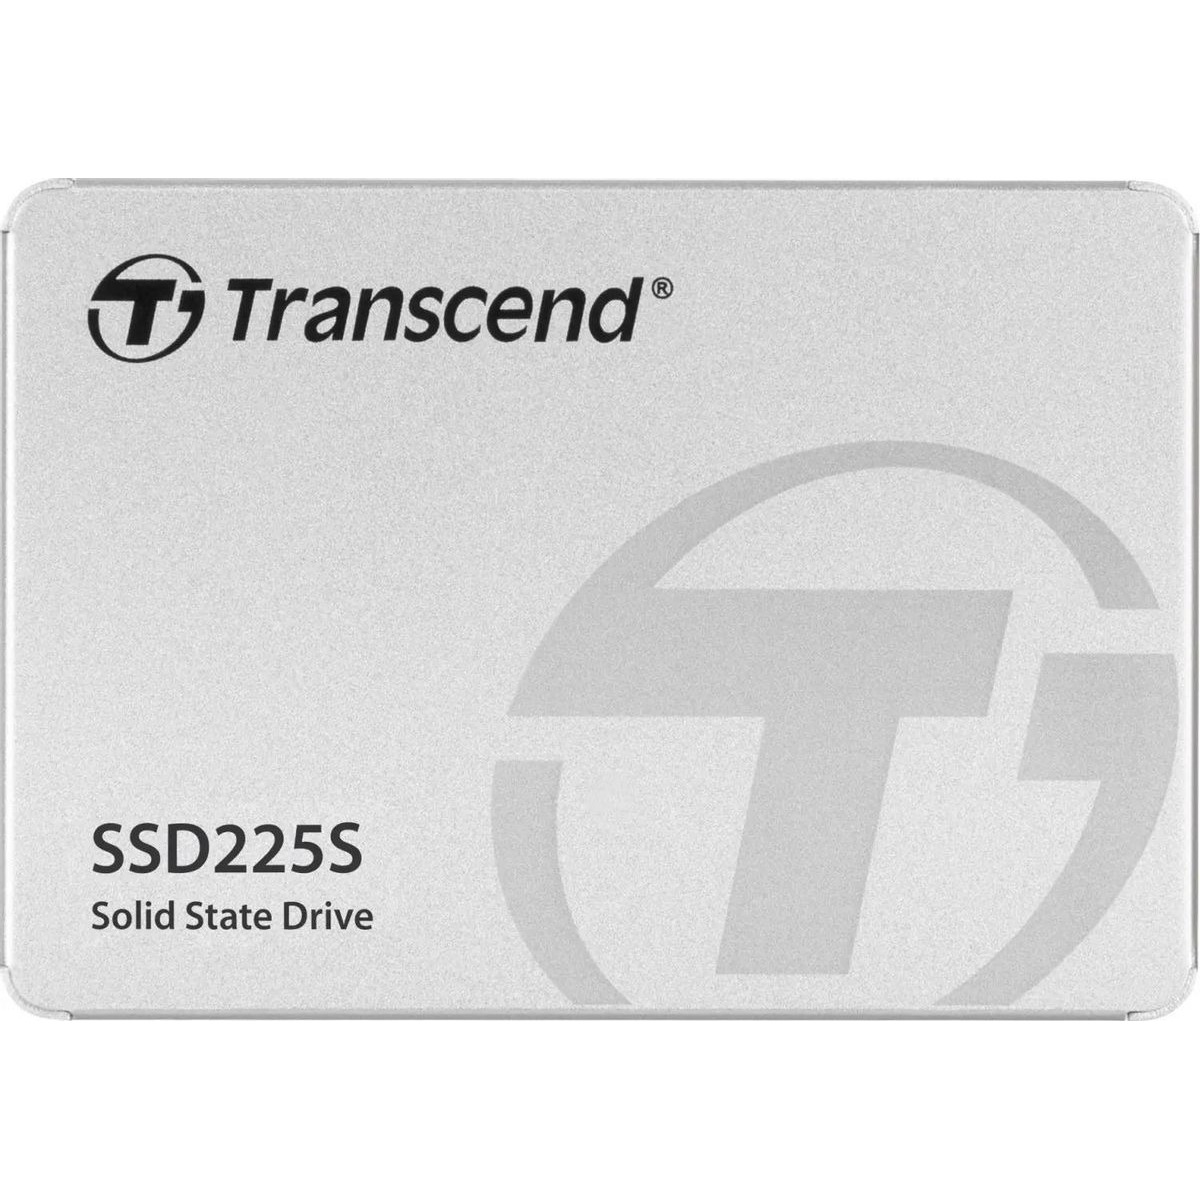 Накопитель SSD Transcend SATA III 250Gb TS250GSSD225S